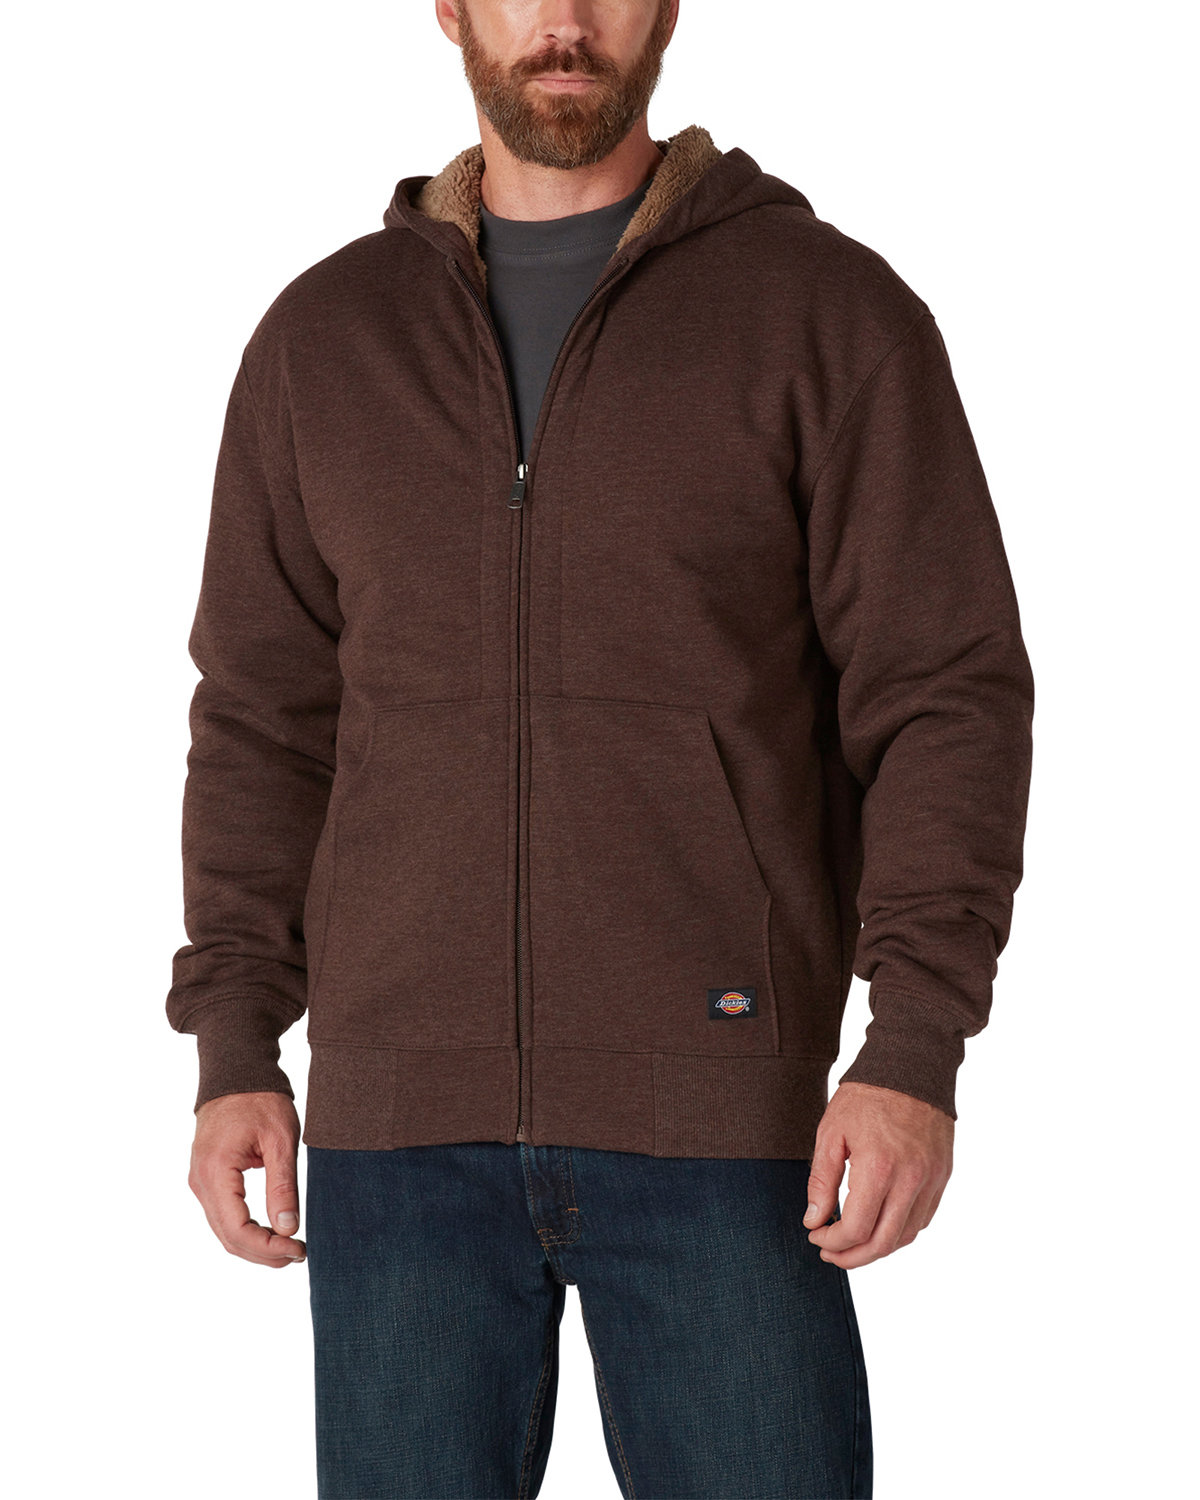 Buy Mens Fleece-Lined Full-Zip Hooded Sweatshirt - Dickies Online at ...